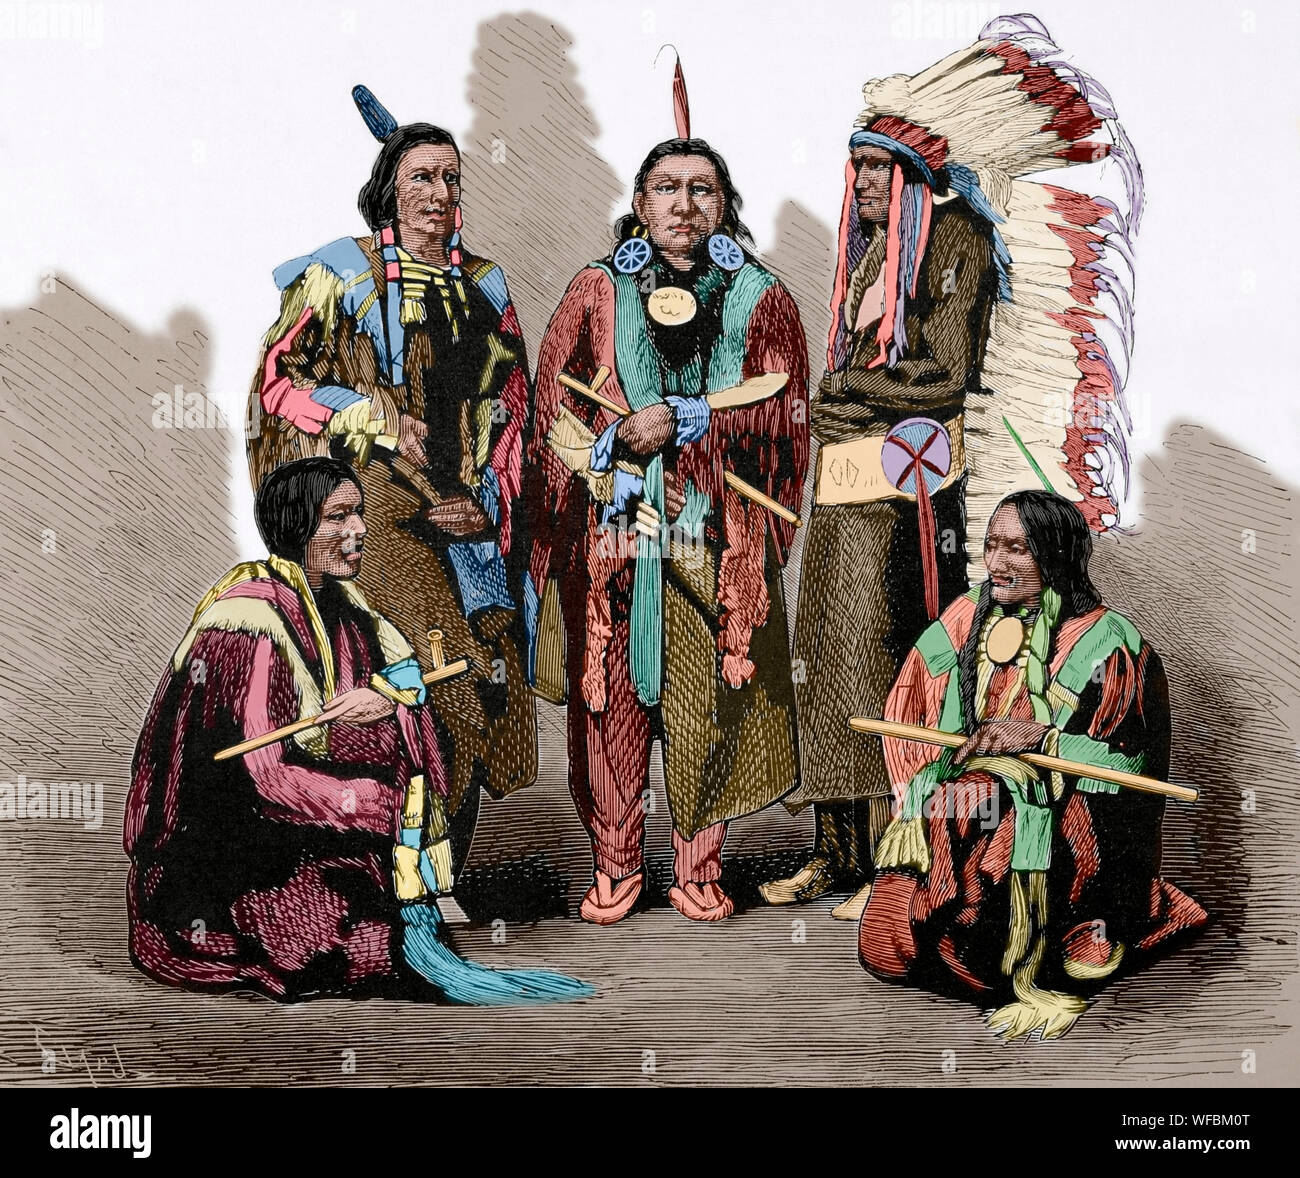 Grande Guerre Sioux de 1876. Bataille de Little Bighorn (25 et 26 juin 1876). Engagement armé entre les forces combinées de l'Cheyenne du Nord, les tribus Lakota et les Arapaho et les forces de la 7e régiment de cavalerie de l'armée américaine, sous le commandement du Lieutenant-colonel George Armstrong Custer, décédé le 25 juin lors des combats. L'armée américaine a subi une grande défaite. Cinq des principaux chefs de l'Indiens Sioux qui a préparé la Bighorn embuscade le 25 juin, où Custer est mort. De gauche à droite : Red Fox, Bearskin, Red Dog, Rocky et ours ours vivant. Gravure de Capuz. La Ilustra Banque D'Images